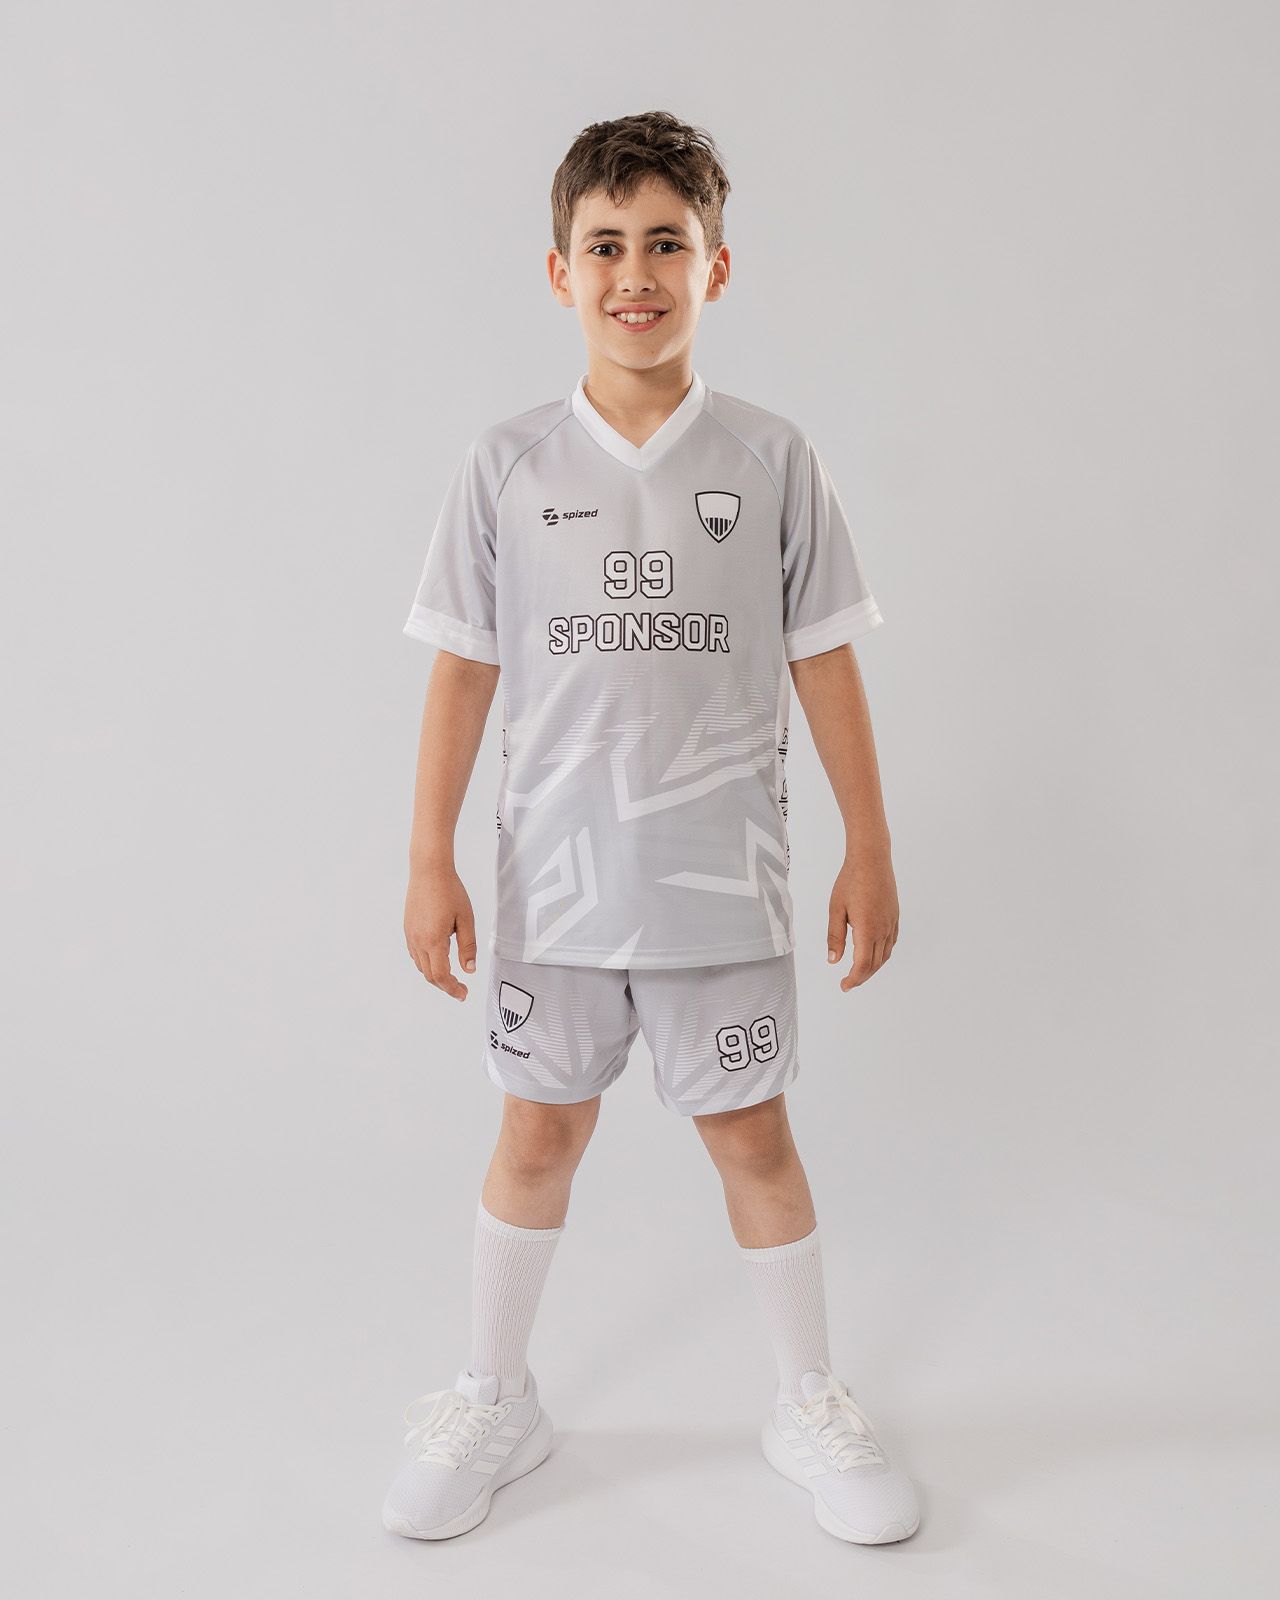 Kid's floorball jersey